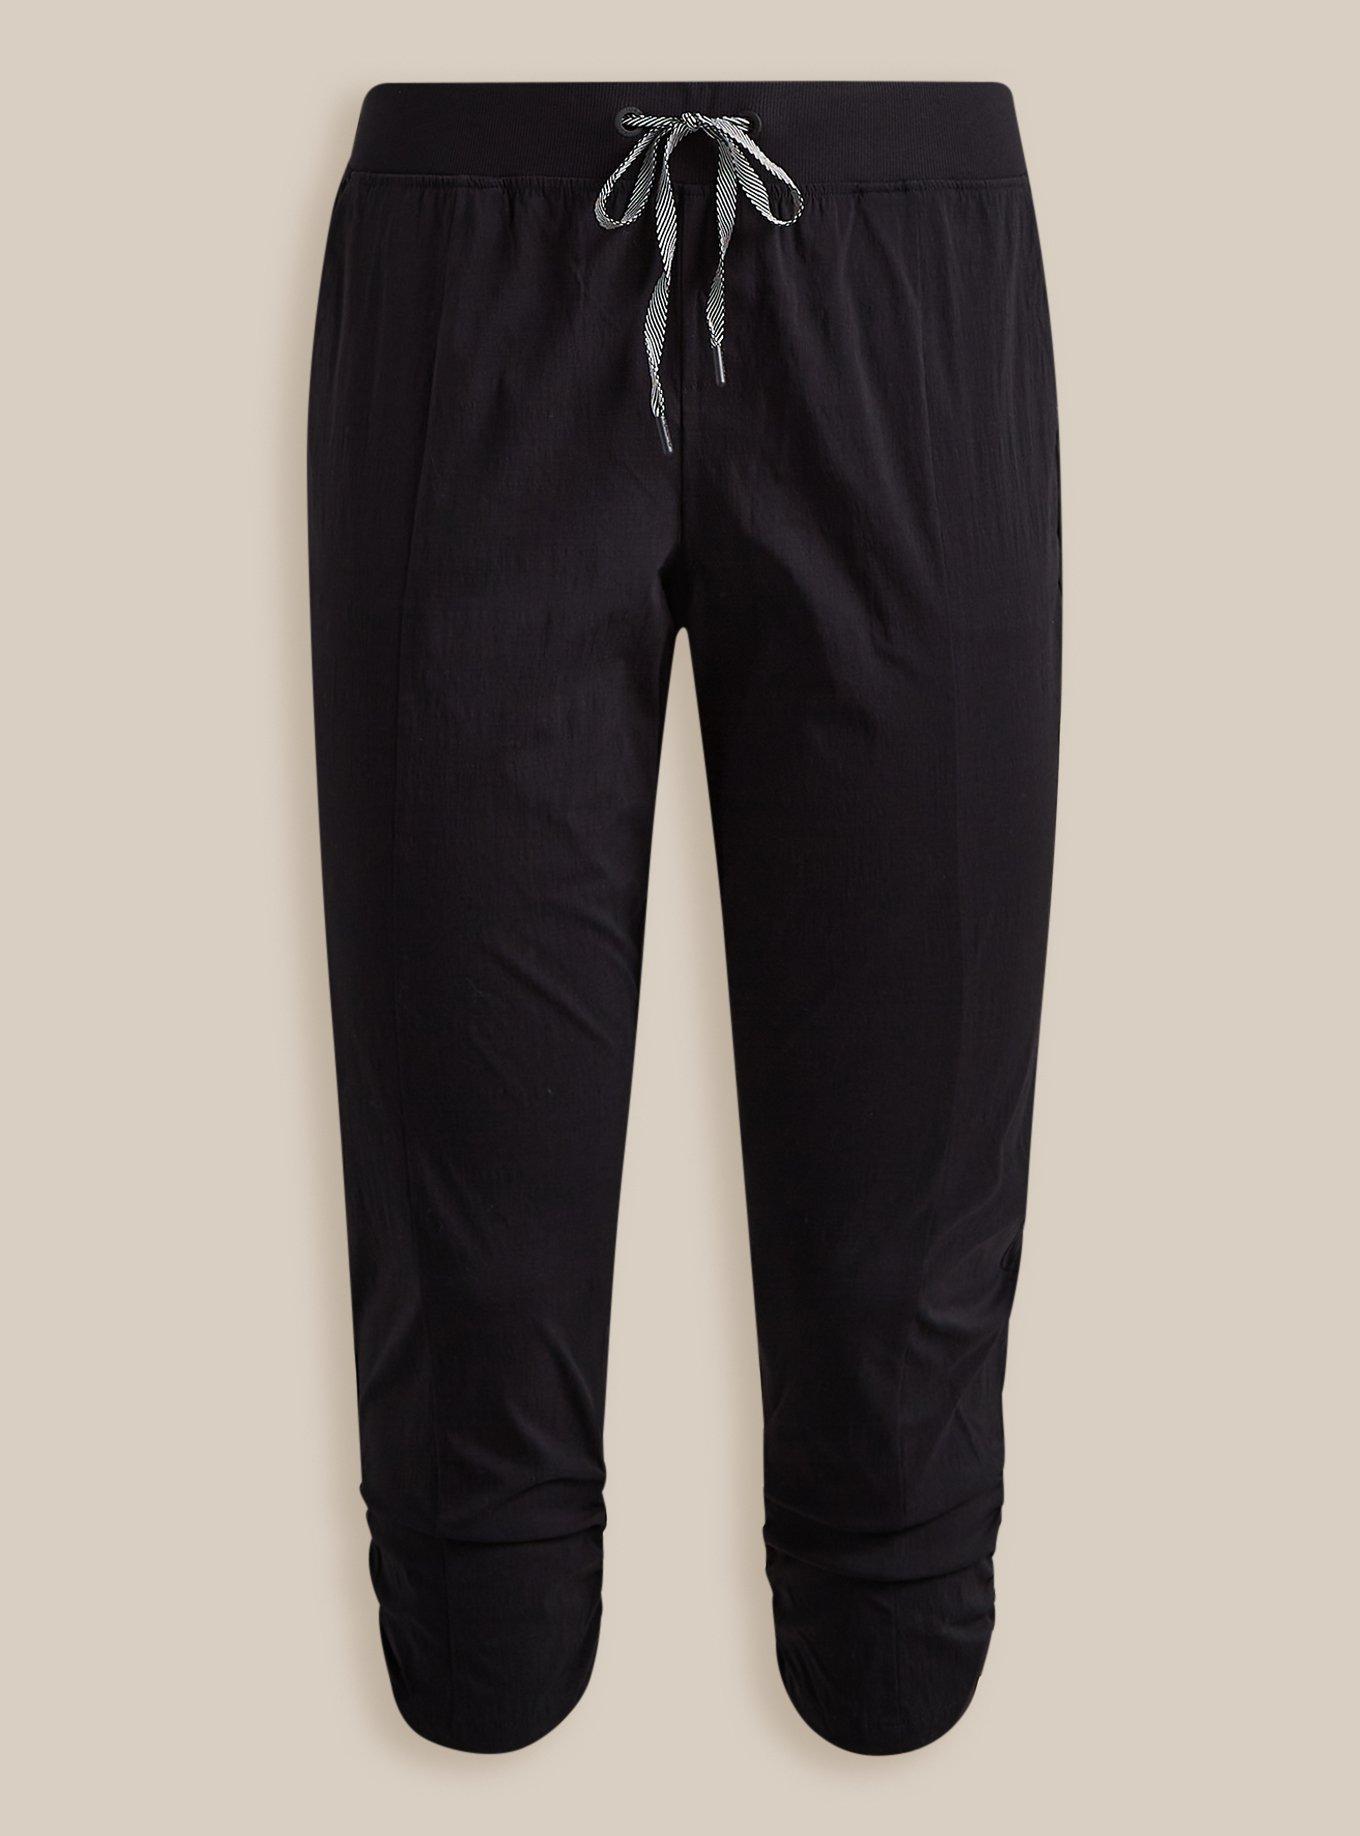 Lululemon City Trek Trouser NWT Sizes 2 4 6 12 Black Medium Rise